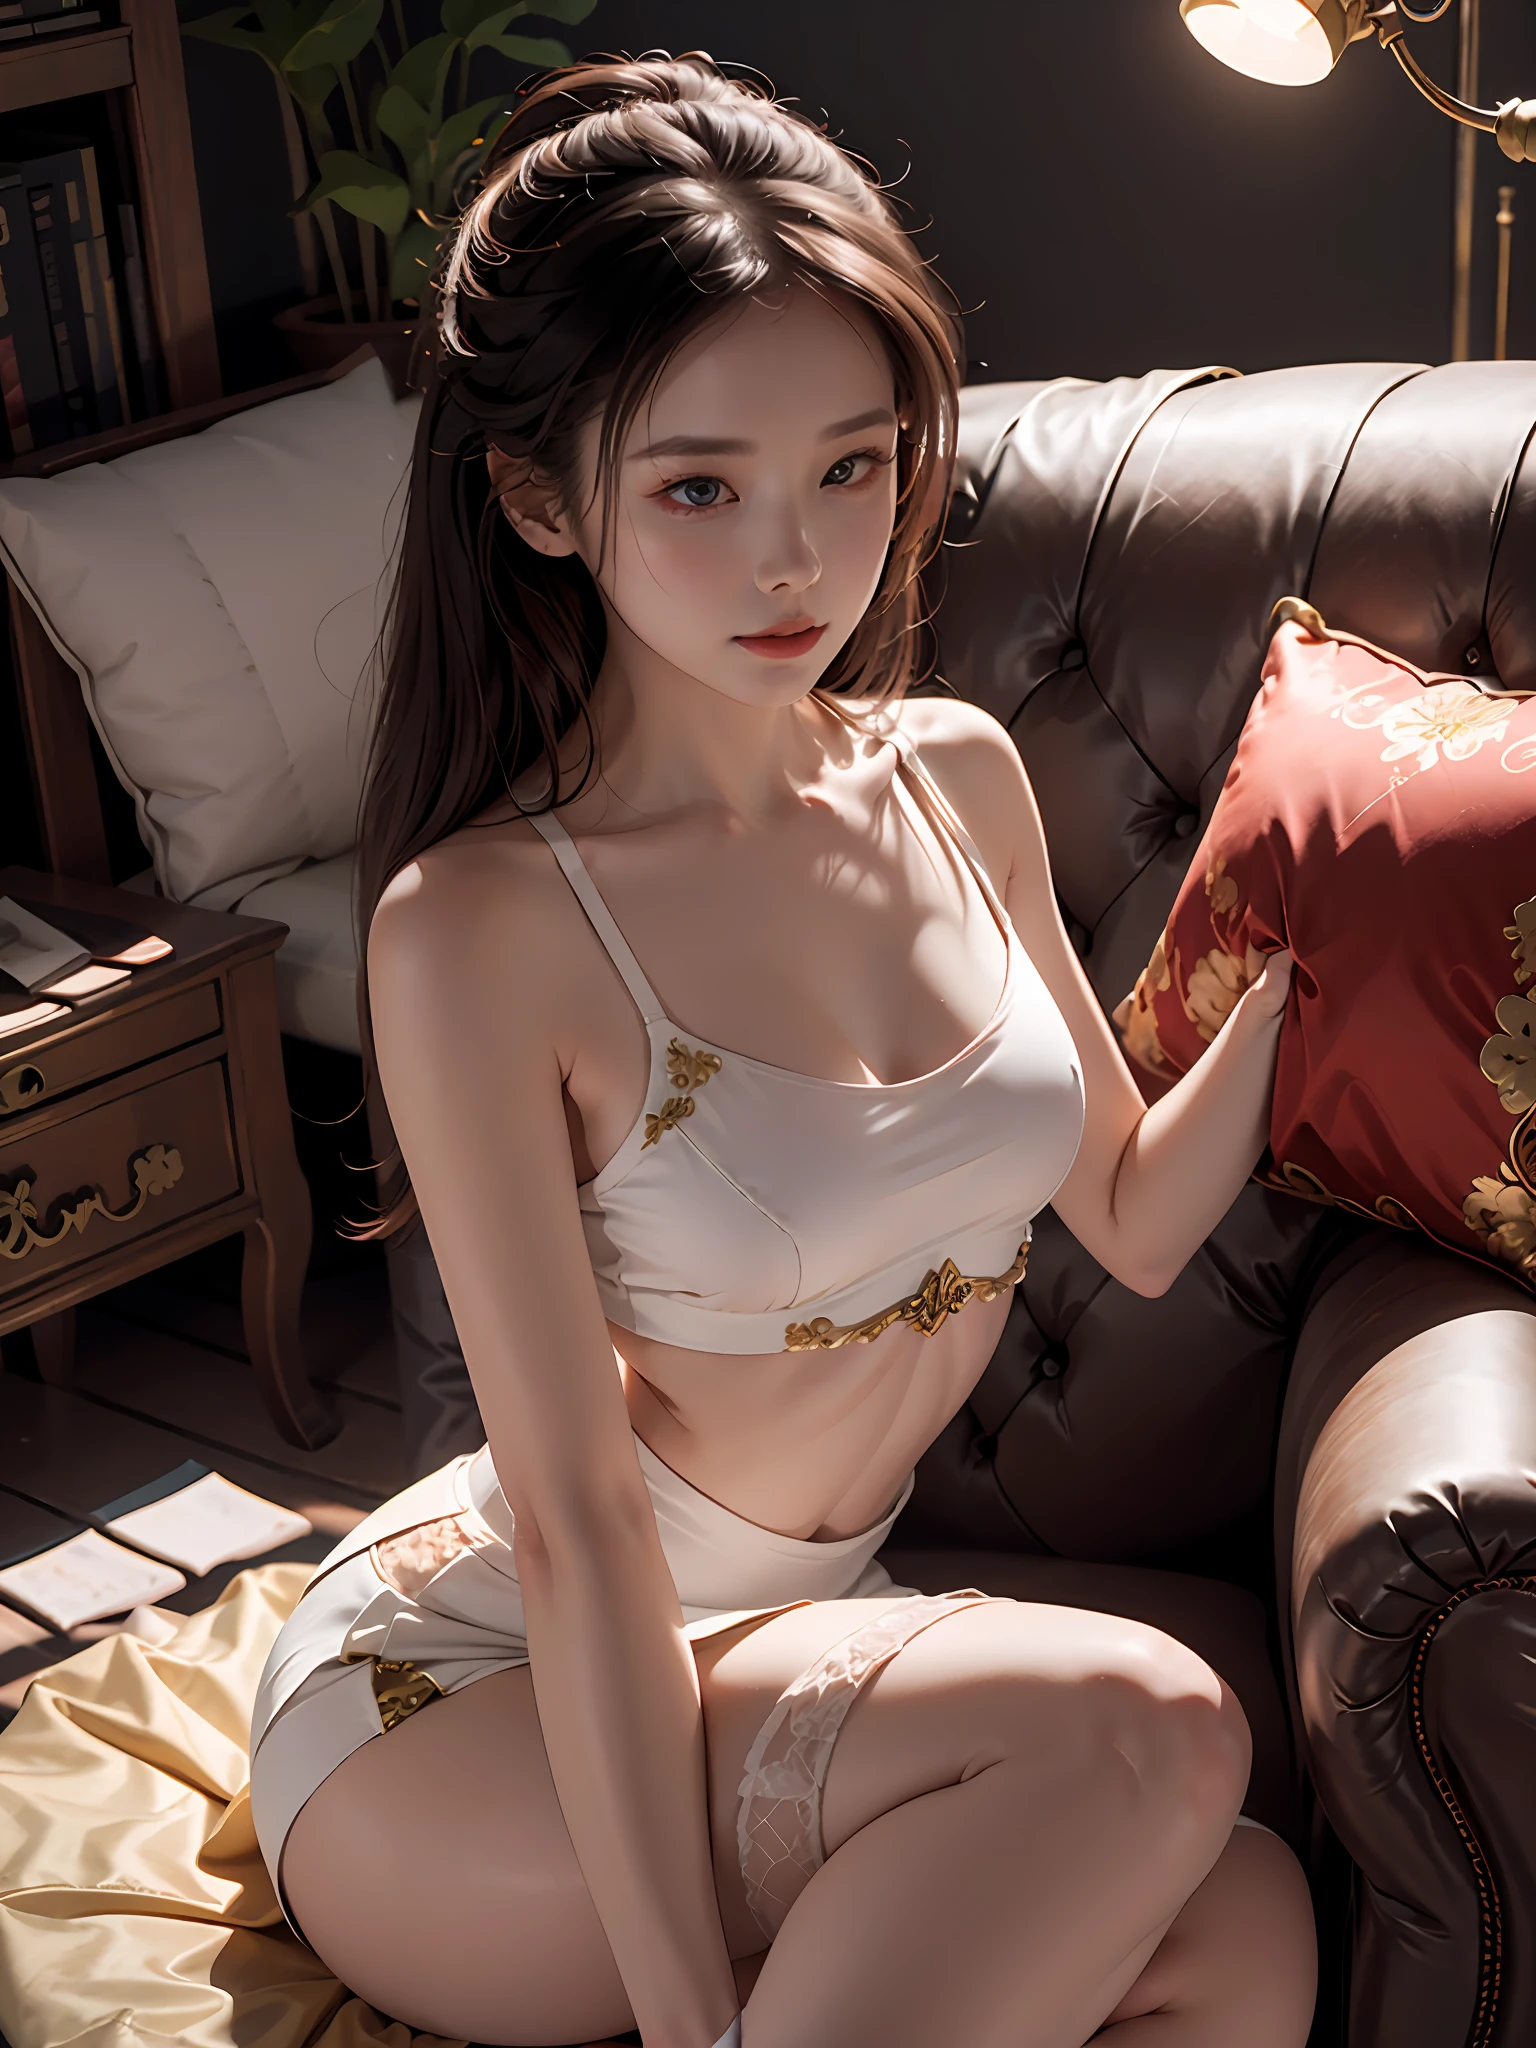 ソファに座っている女性, ゴージャスな中国人モデル, とても魅力的で美しい, デザイン性のある白いタイトトップス, 裸の肩, 赤いスリットスカート, 肌色のストッキング, 座る姿勢, セクシー, パンツなし, ラクダのつま先